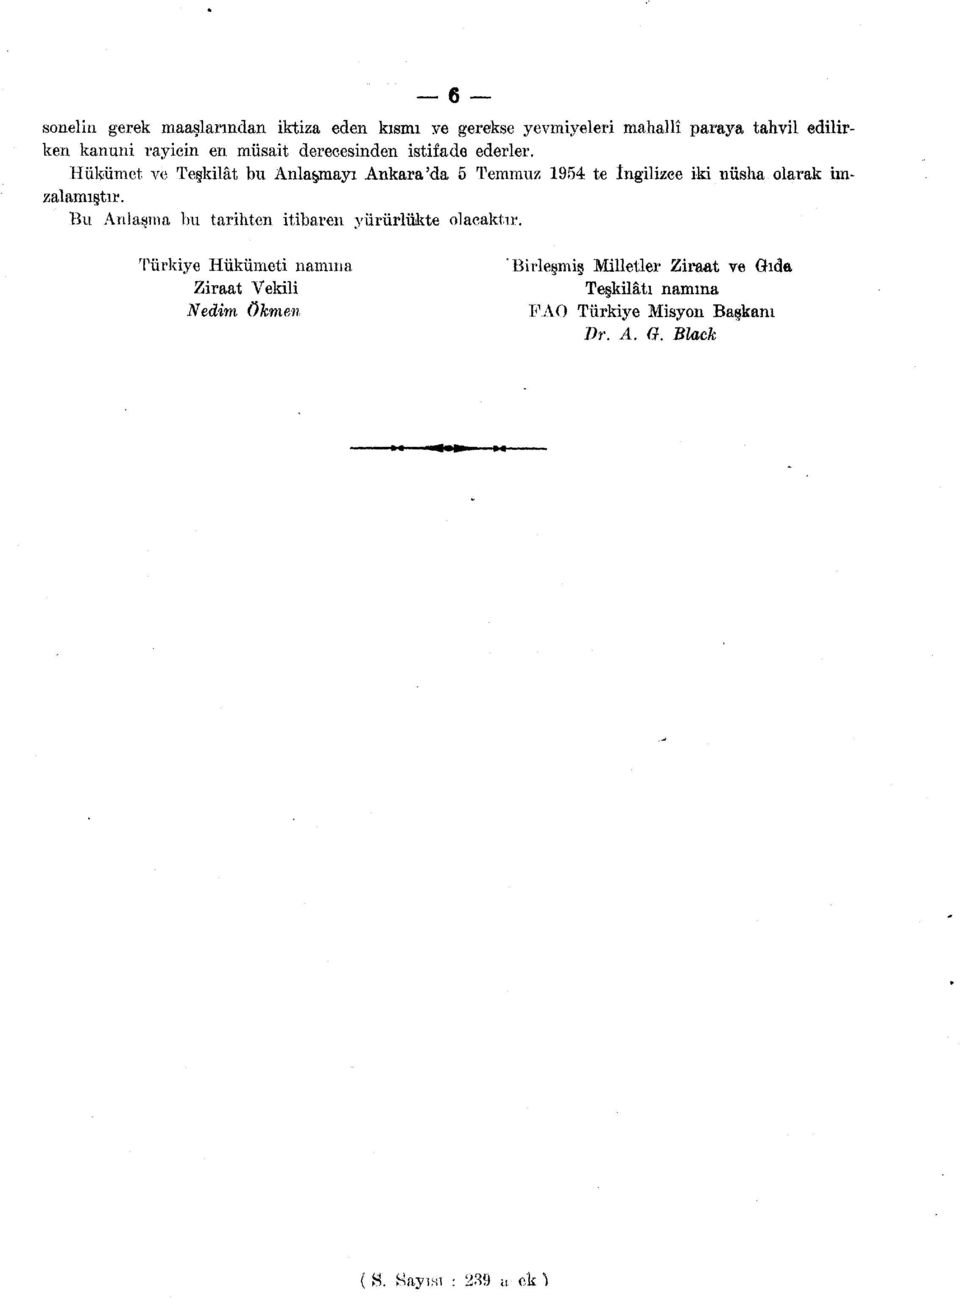 Hükümet ve Teşkilât bu Anlatmayı Ankara'da 5 Temmuz 1954 te ingilizce iki nüsha olarak imzalamıştır.